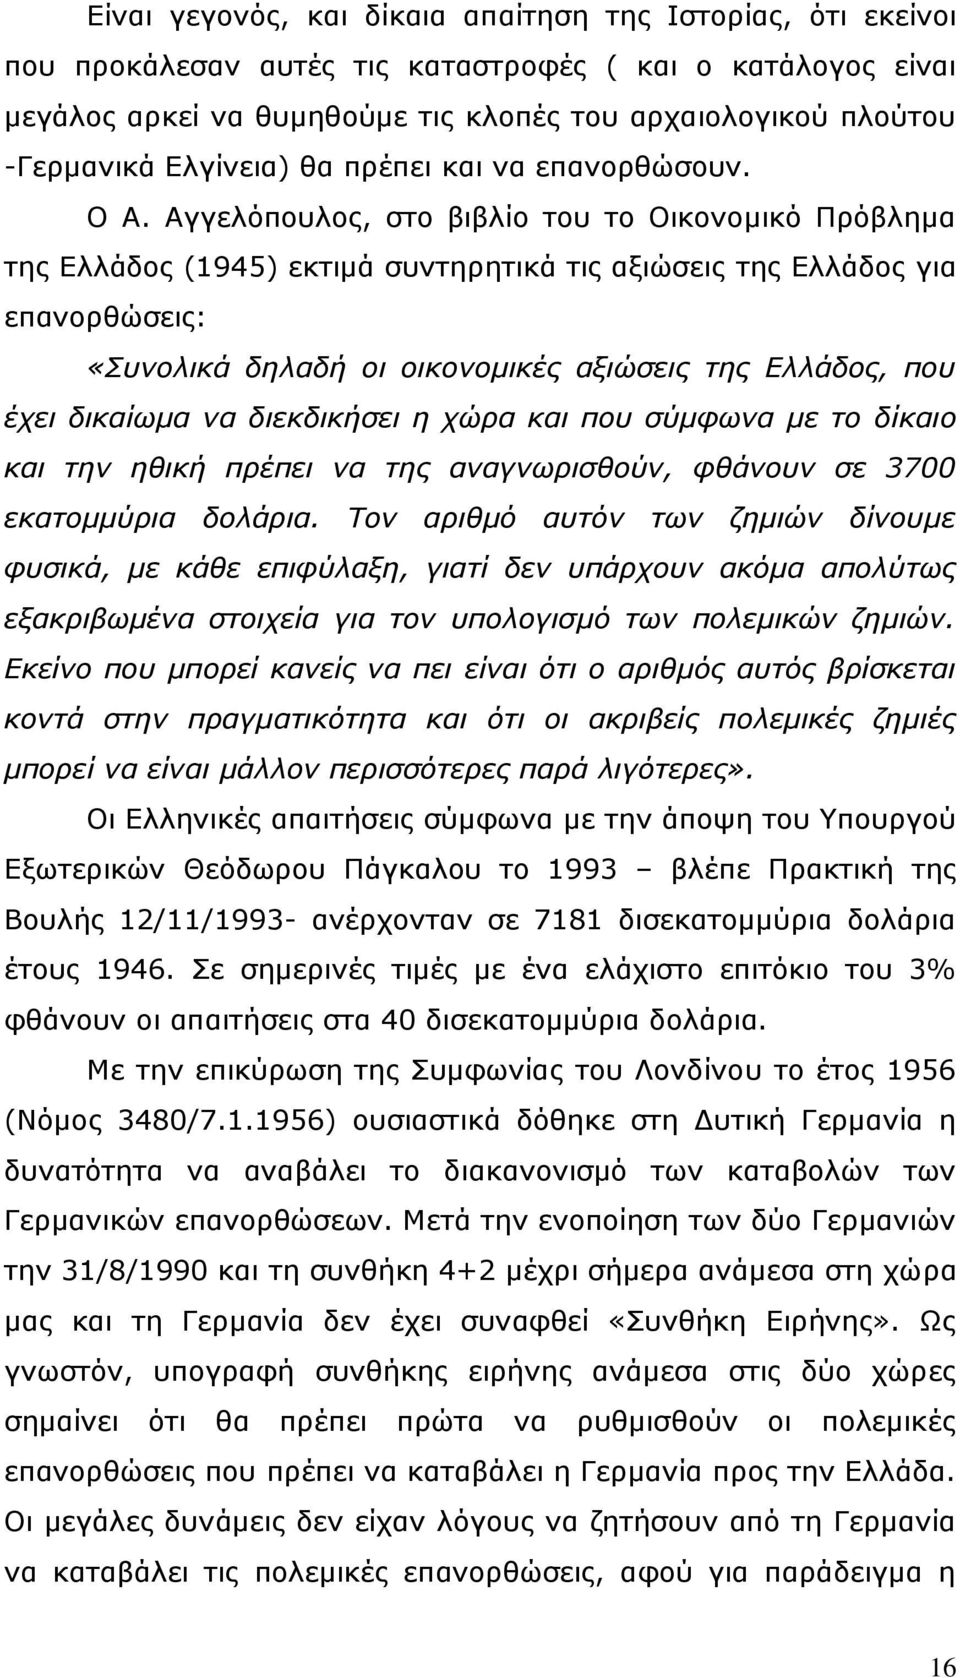 Αγγελόπουλος, στο βιβλίο του το Οικονομικό Πρόβλημα της Ελλάδος (1945) εκτιμά συντηρητικά τις αξιώσεις της Ελλάδος για επανορθώσεις: «Συνολικά δηλαδή οι οικονομικές αξιώσεις της Ελλάδος, που έχει